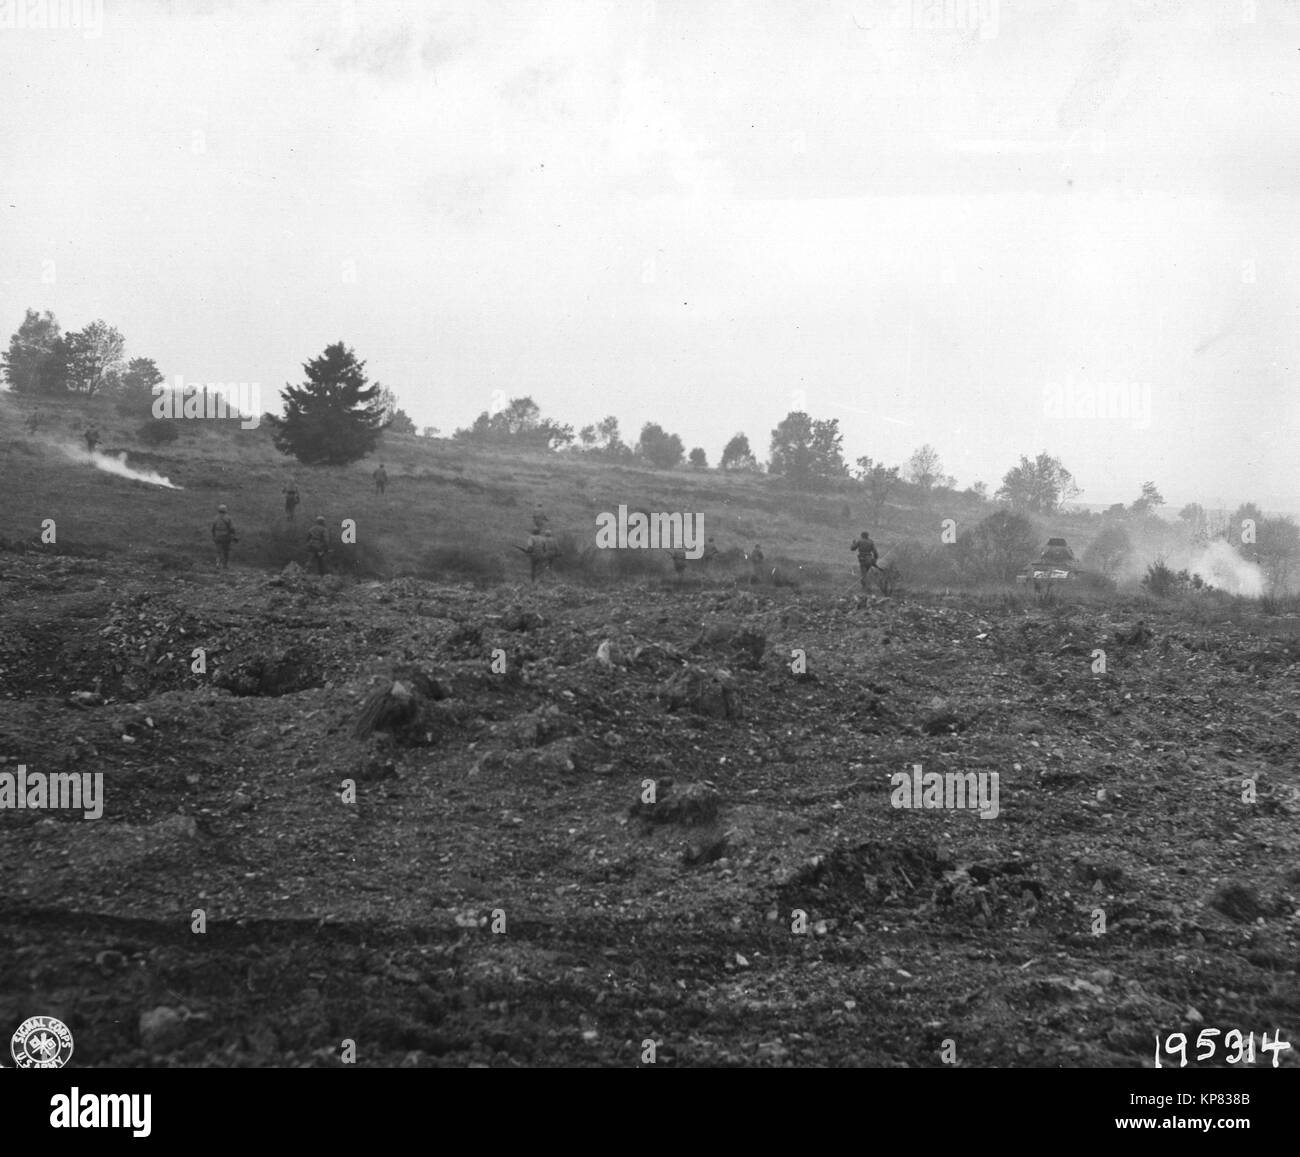 Les fantassins américains course dans un champ ouvert pour atteindre une casemate allemande, sur la ligne Siegfried allemand de la défense, Eisenboen, Allemagne, 10 944 (28e Division d'infanterie) Banque D'Images